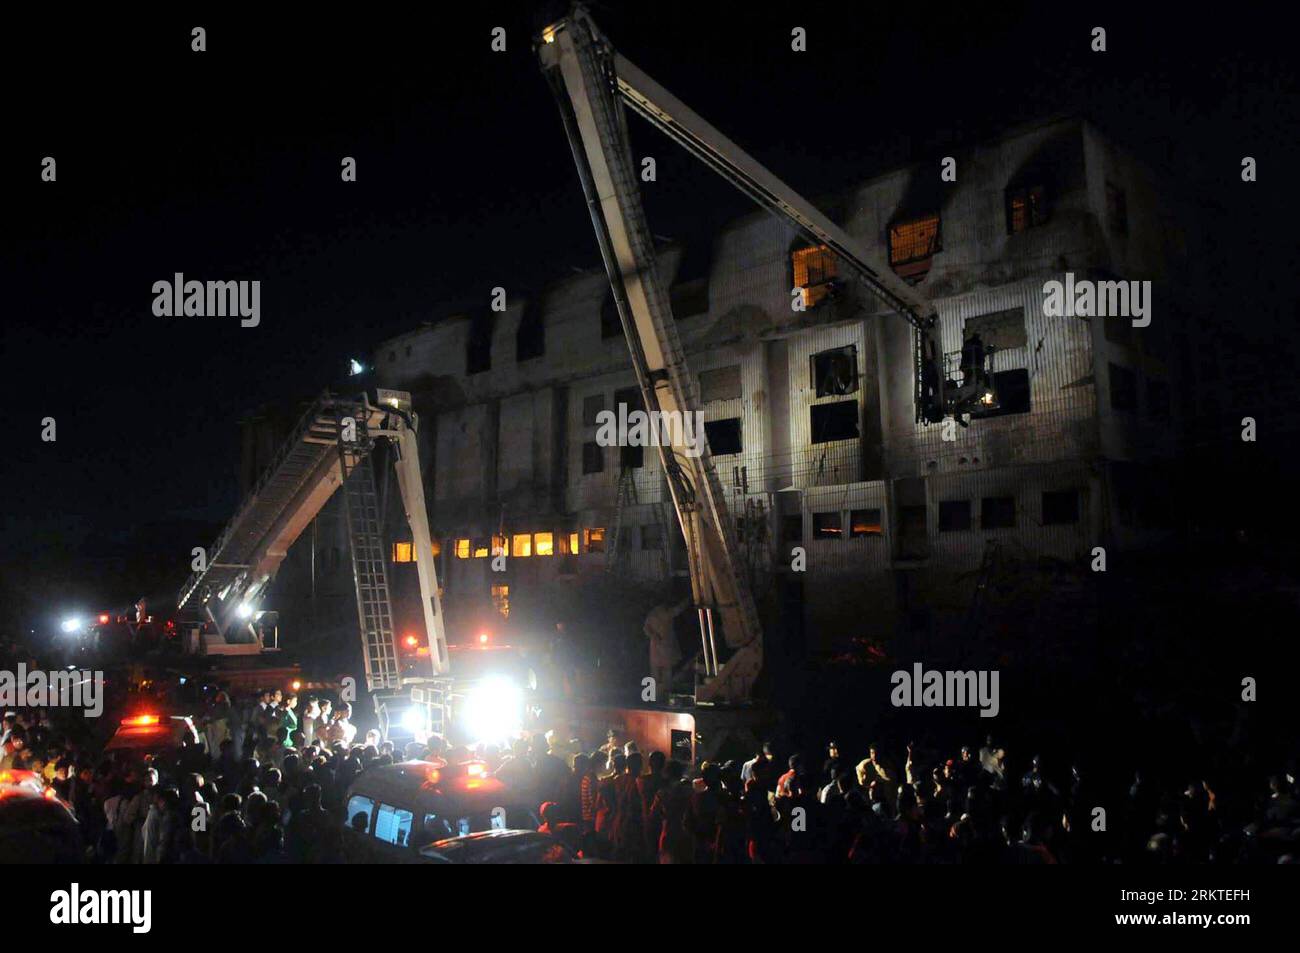 (120911) -- KARACHI, 11 septembre 2012 (Xinhua) -- des pompiers et des sauveteurs pakistanais travaillent dans une usine de vêtements à Karachi, dans le sud du Pakistan, le 11 septembre 2012. Deux incendies d'usine qui se sont produits mardi au Pakistan ont fait 40 morts et blessé 57 autres, selon les médias locaux. (Xinhua/Masroor) PAKISTAN-KARACHI-CONFECTION USINE-FIRE PUBLICATIONxNOTxINxCHN Banque D'Images